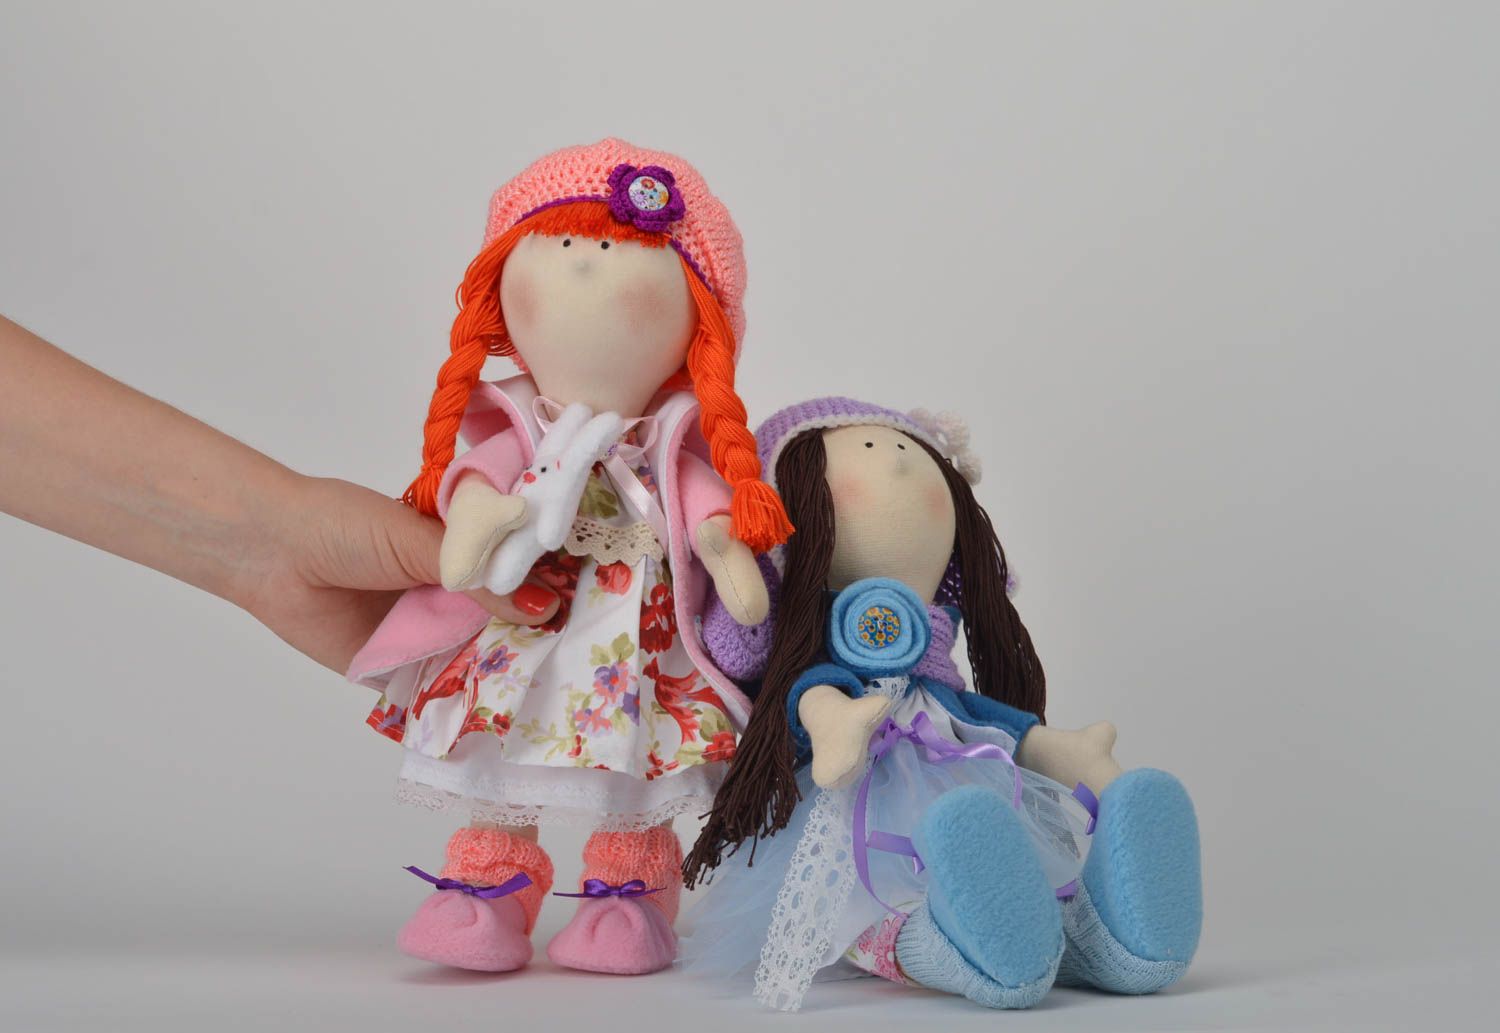 Авторские куклы девочки куклы ручной работы тряпичные куклы набор из 2 штук фото 1